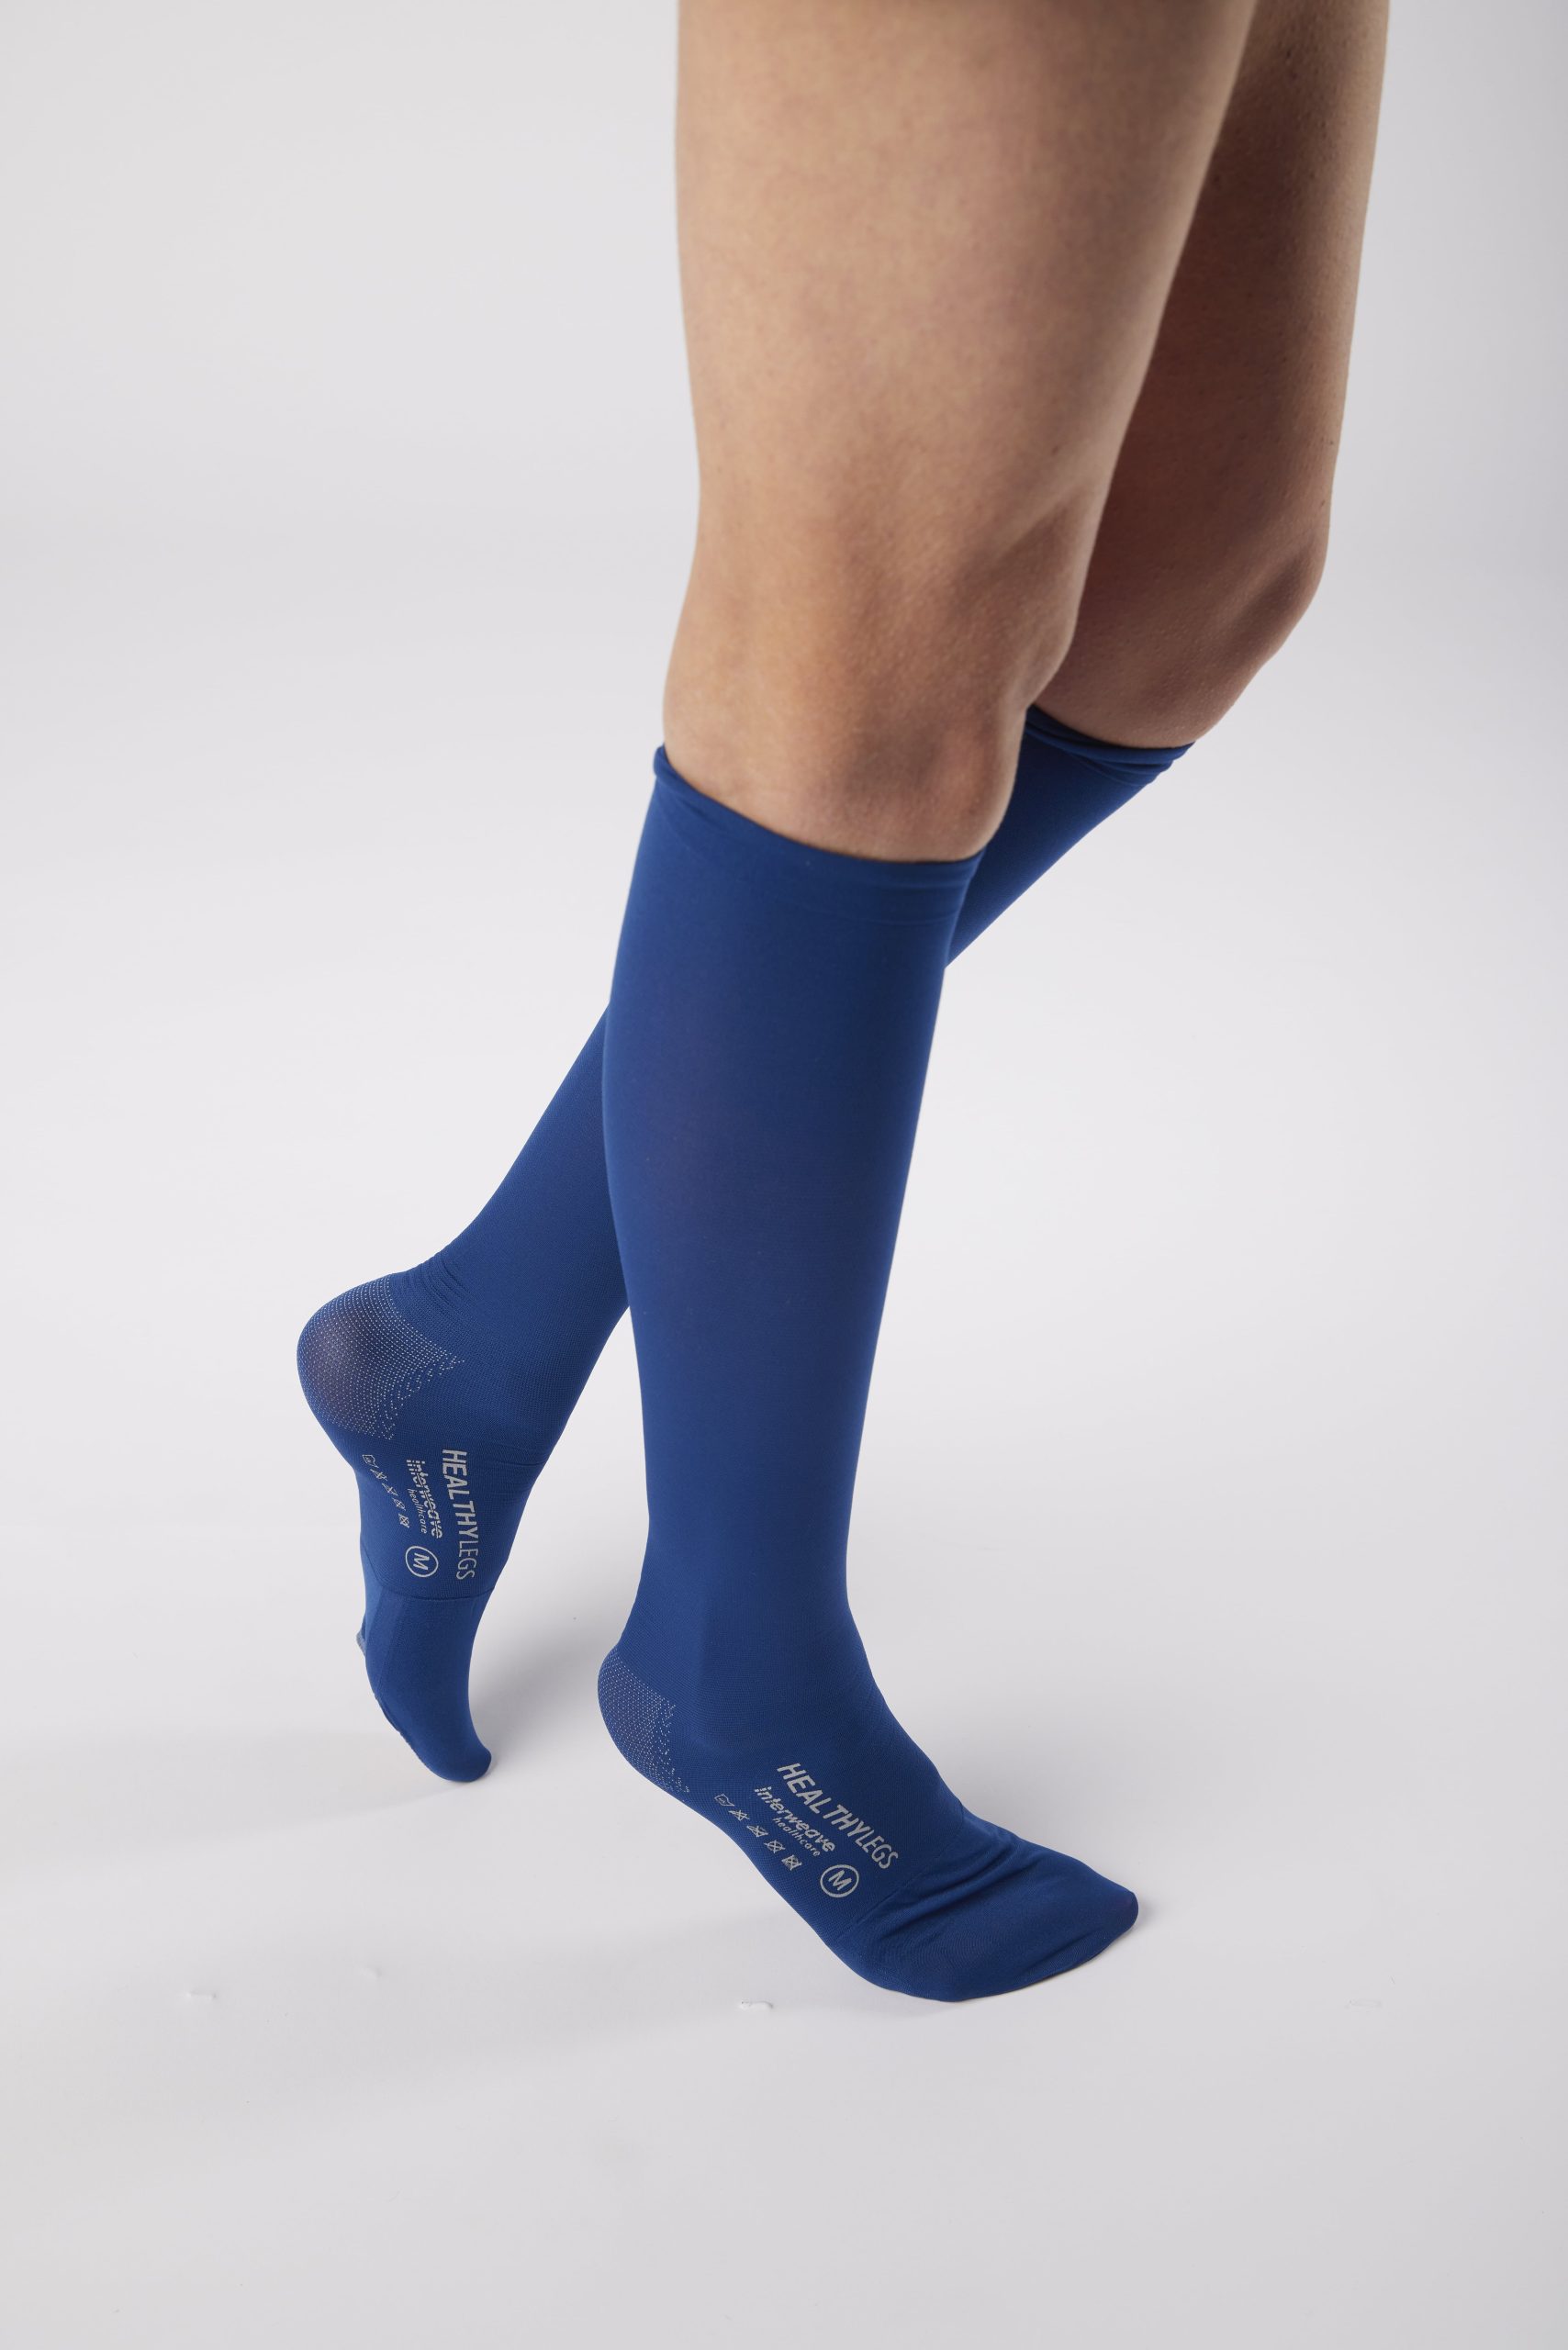 Medical Compression Knee High Socks